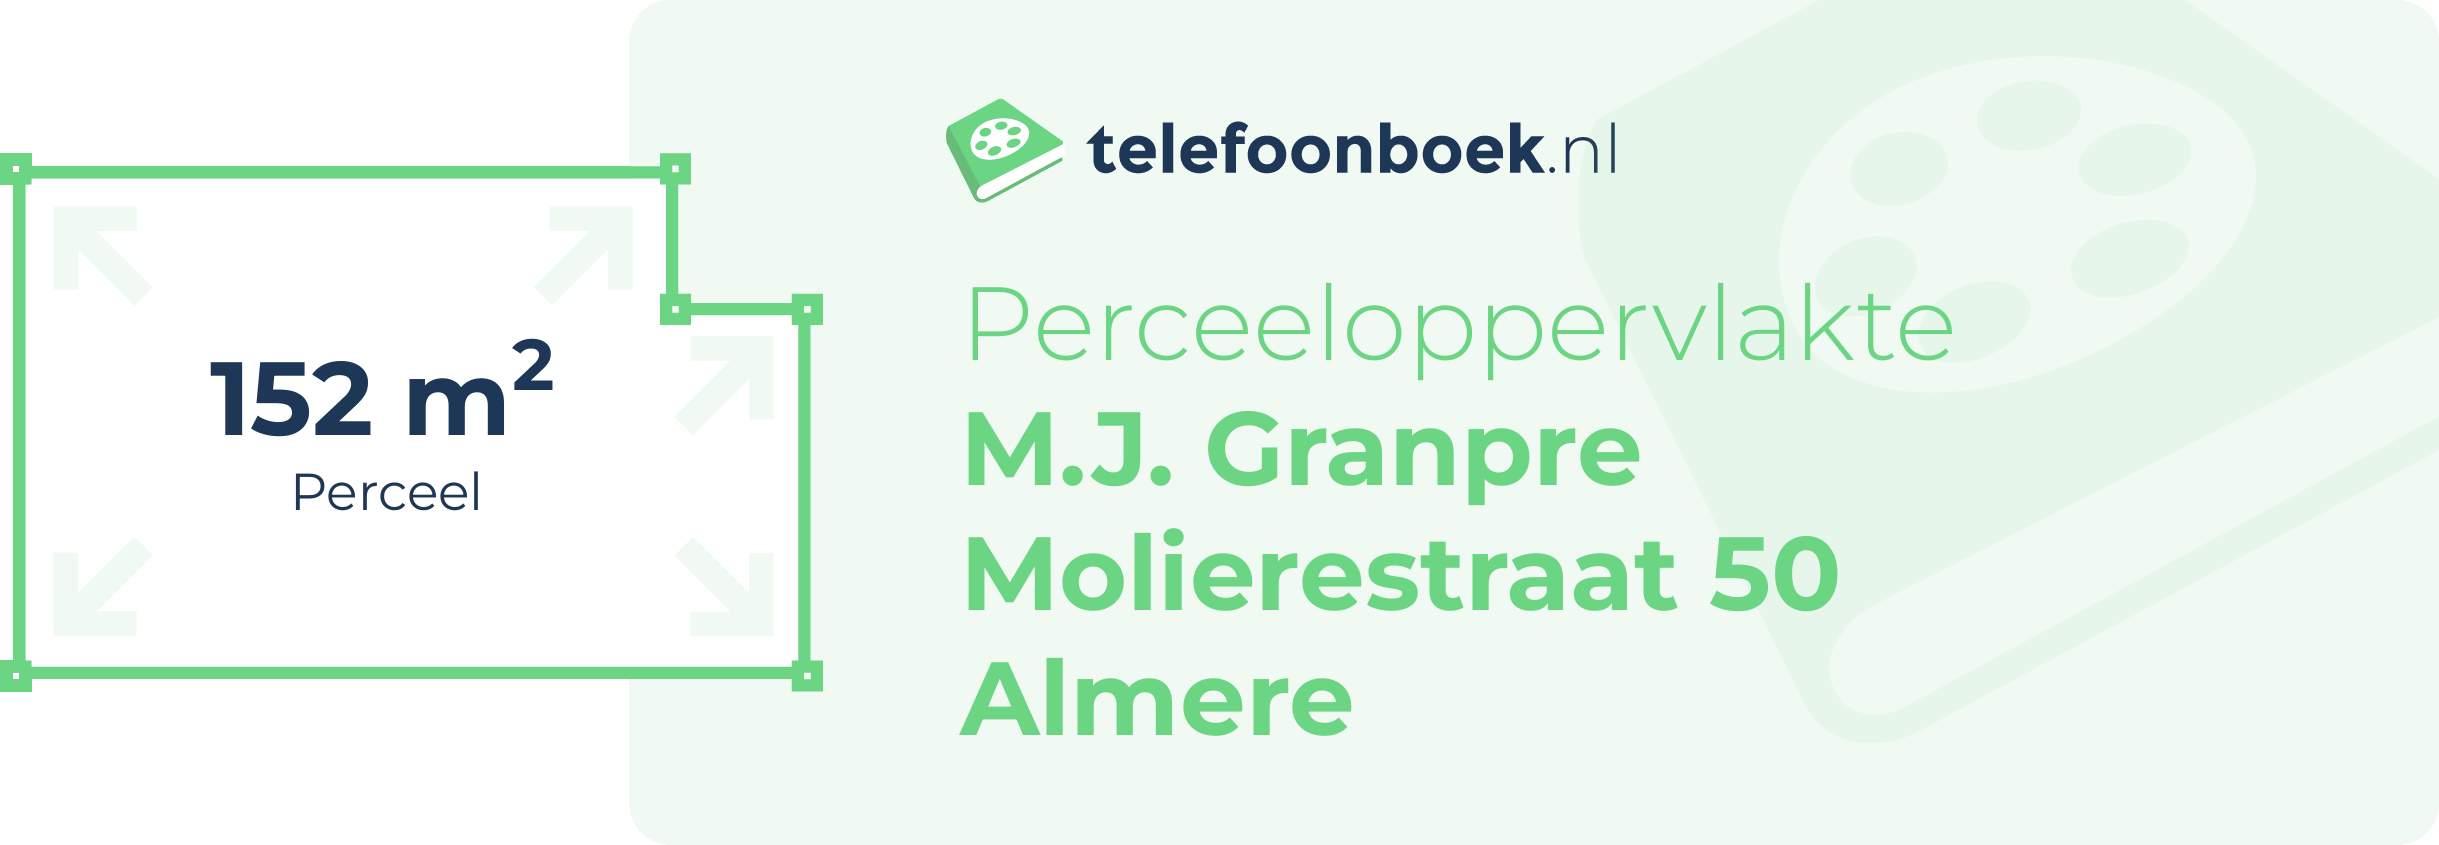 Perceeloppervlakte M.J. Granpre Molierestraat 50 Almere